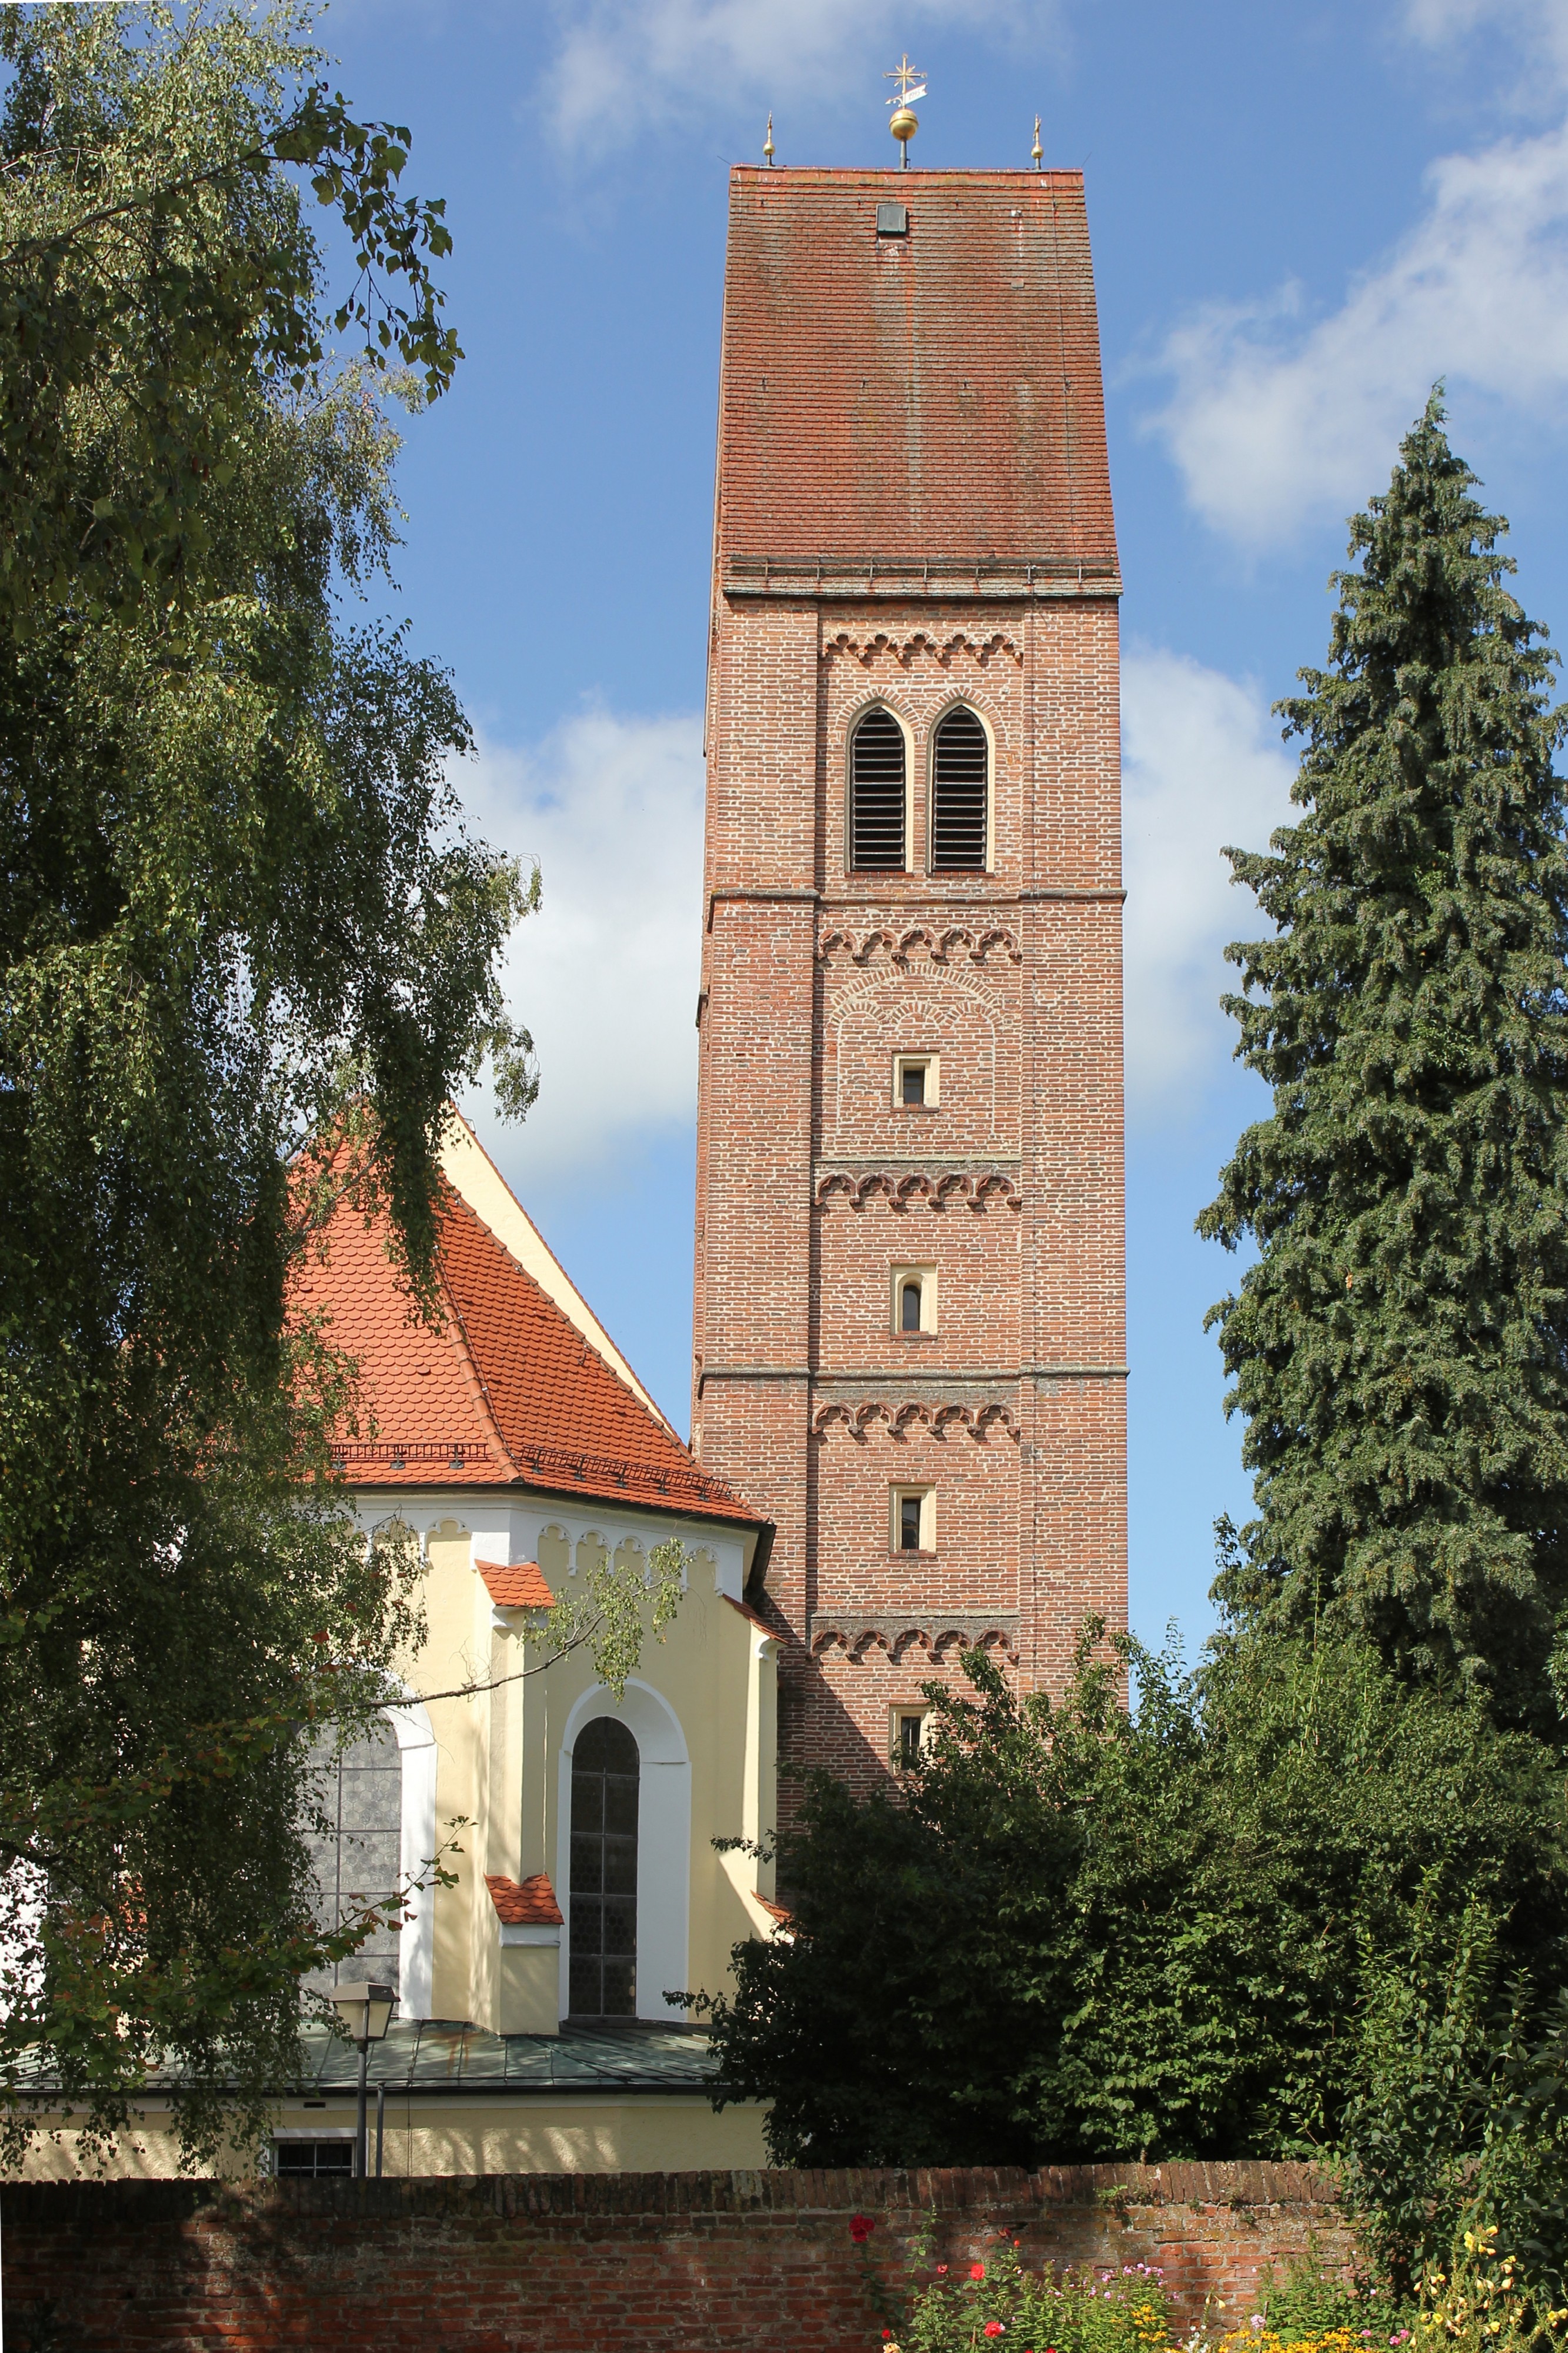 Bad Wörishofen, Pfarrkirche St. Justina - Turm (2015-08-28 2956 Sp)